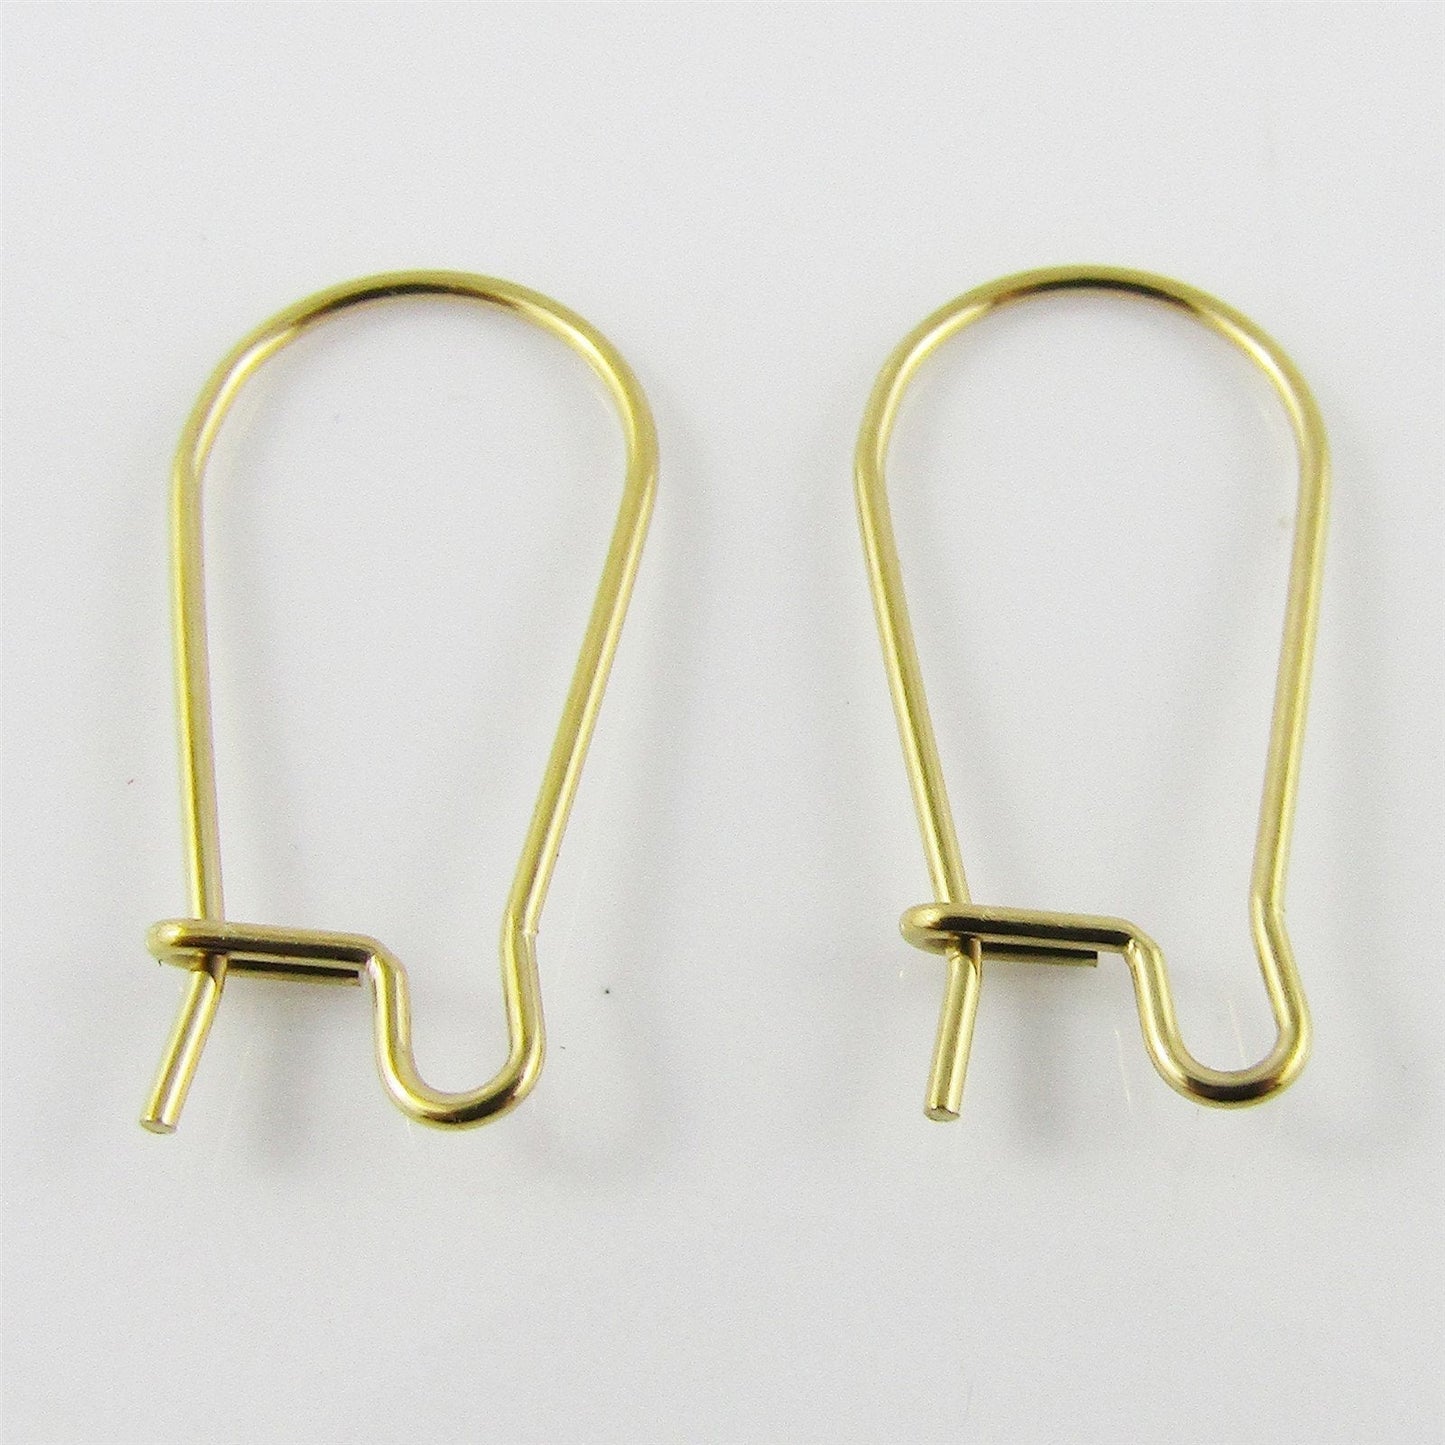 Bulk 20pcs DIY Kidney Earring Hook Finding 20x10mm 0.7mm Gold SSteel